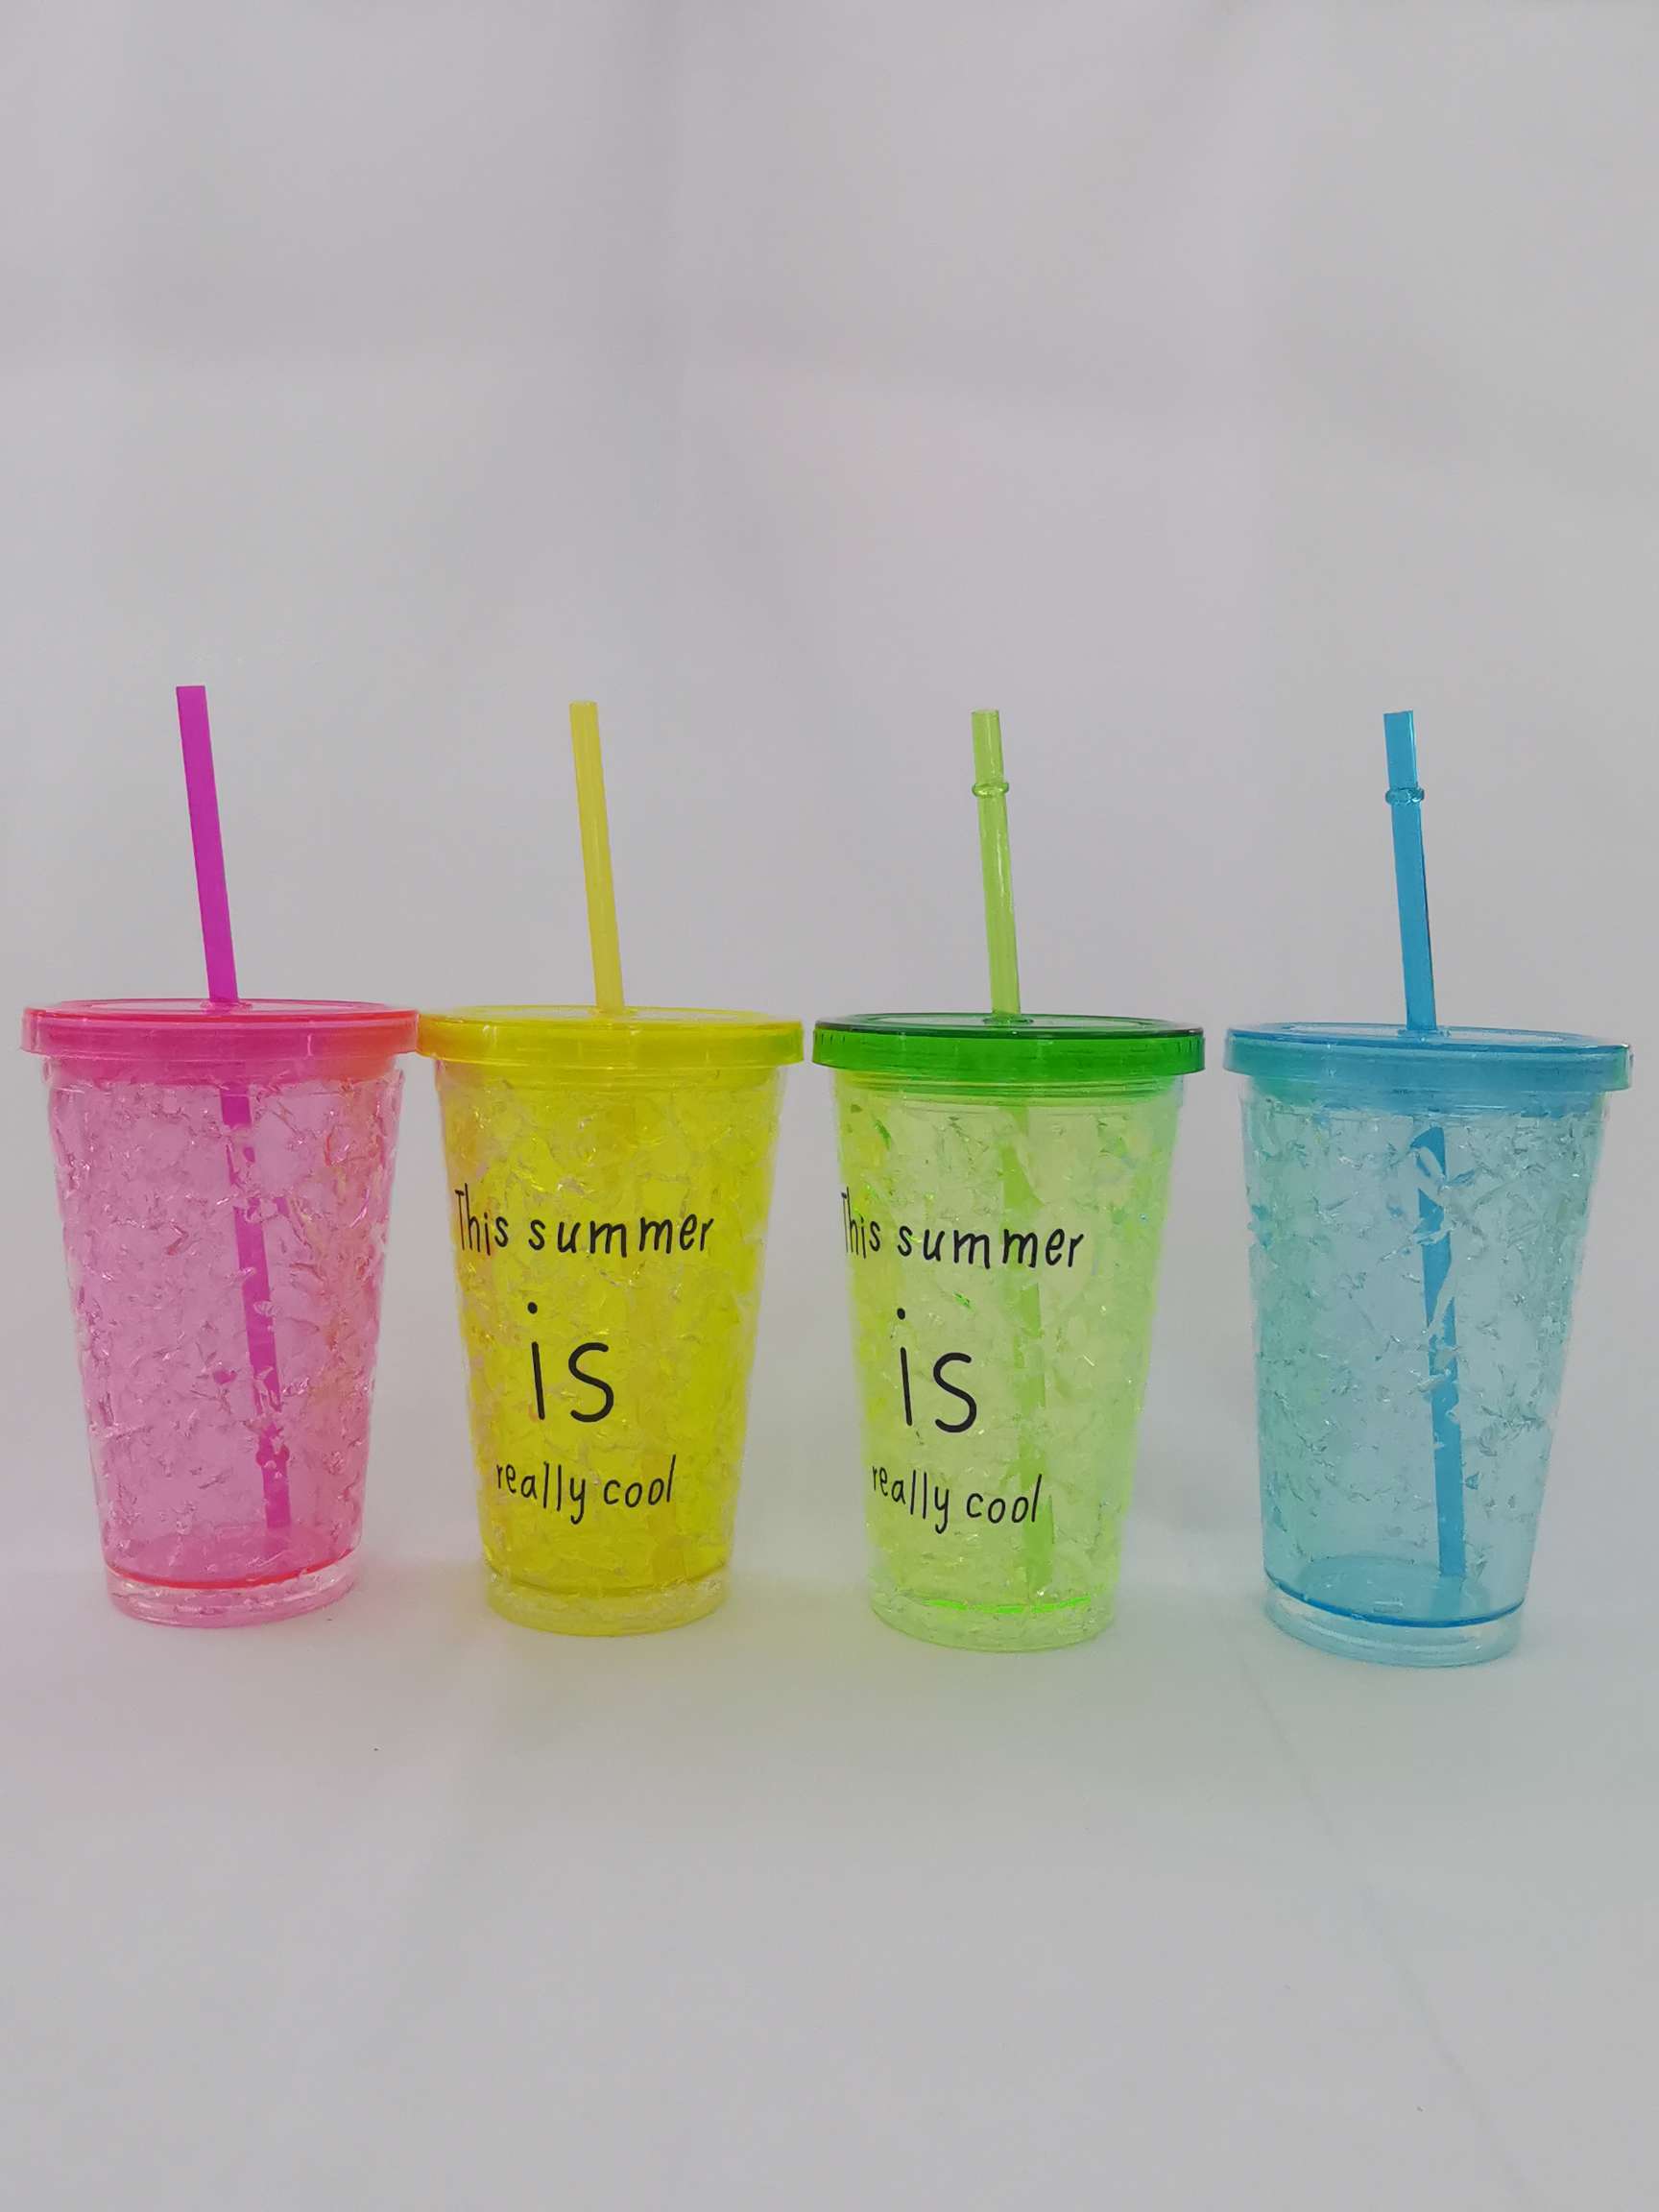 双层吸管塑料杯 创意果汁杯冰杯夏日防摔便携广告礼品杯可定制